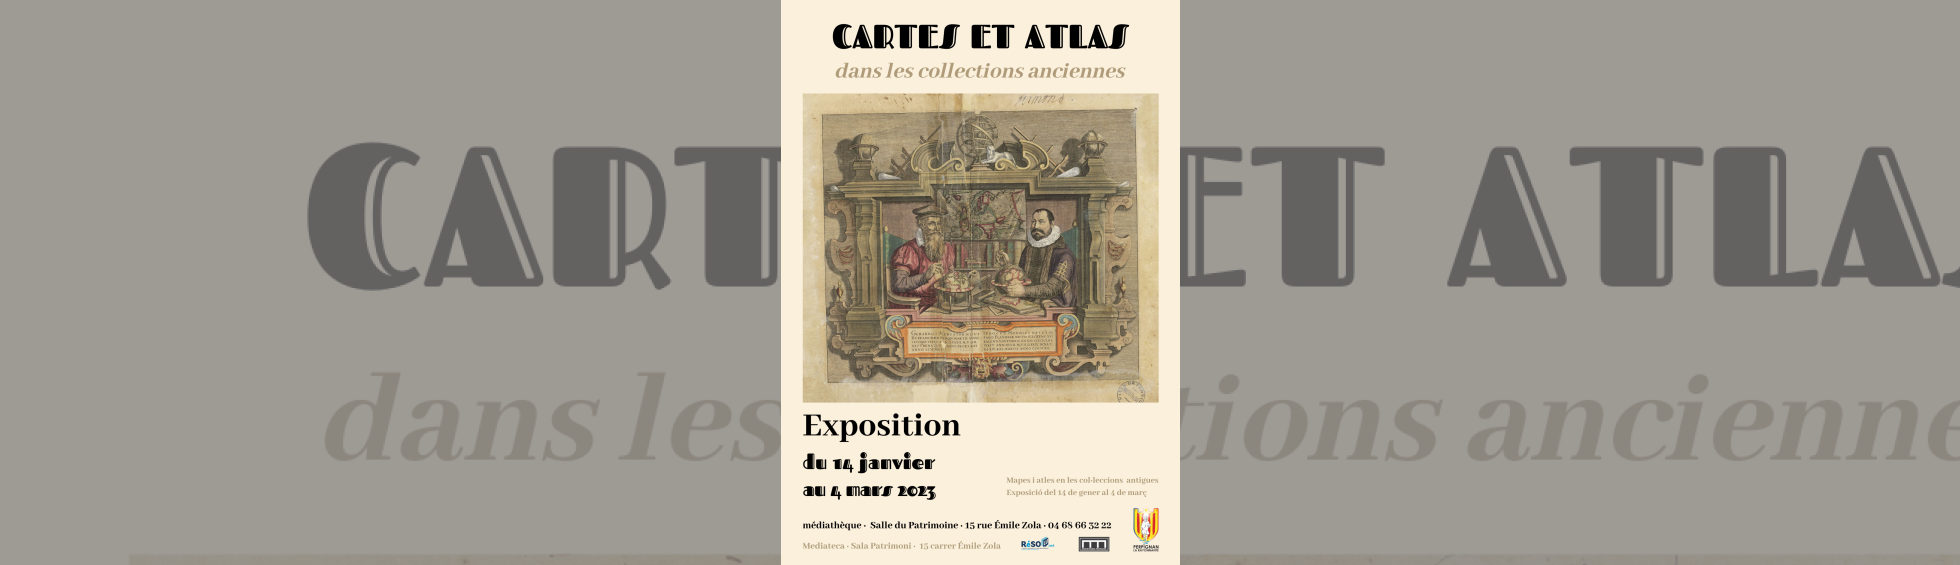 Exposition "Cartes et Atlas"